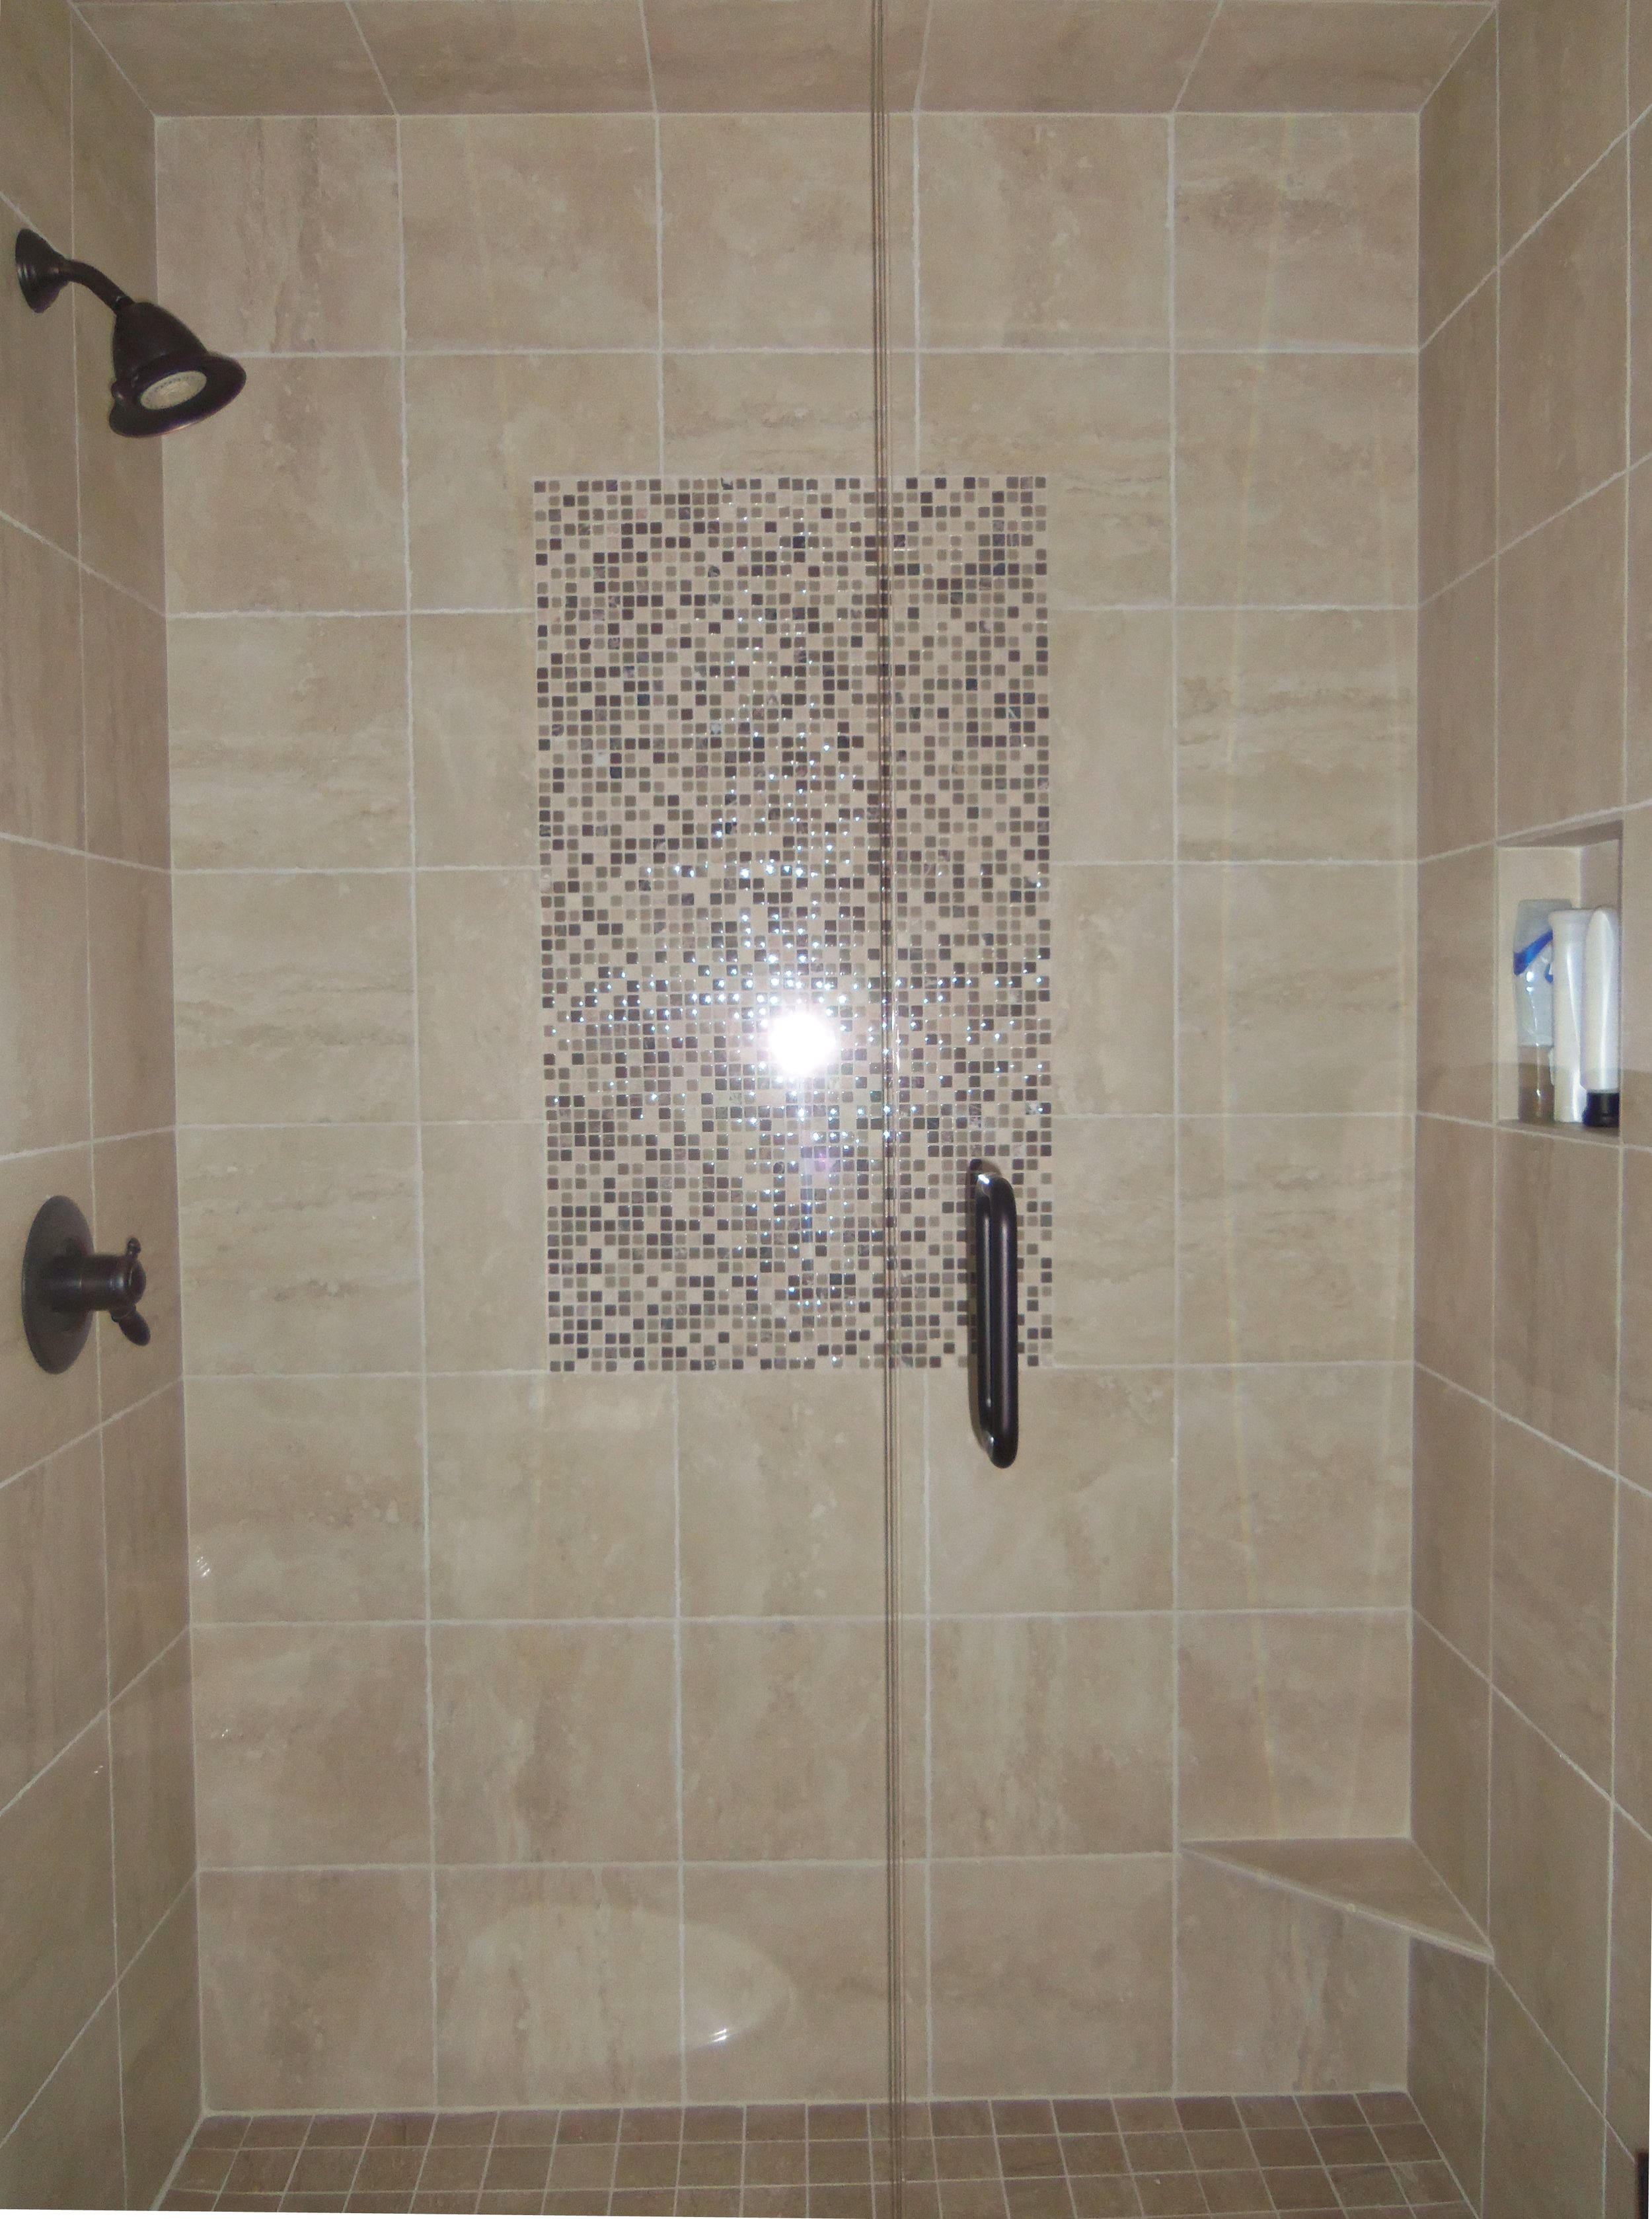 Decorative Element in Shower.jpg